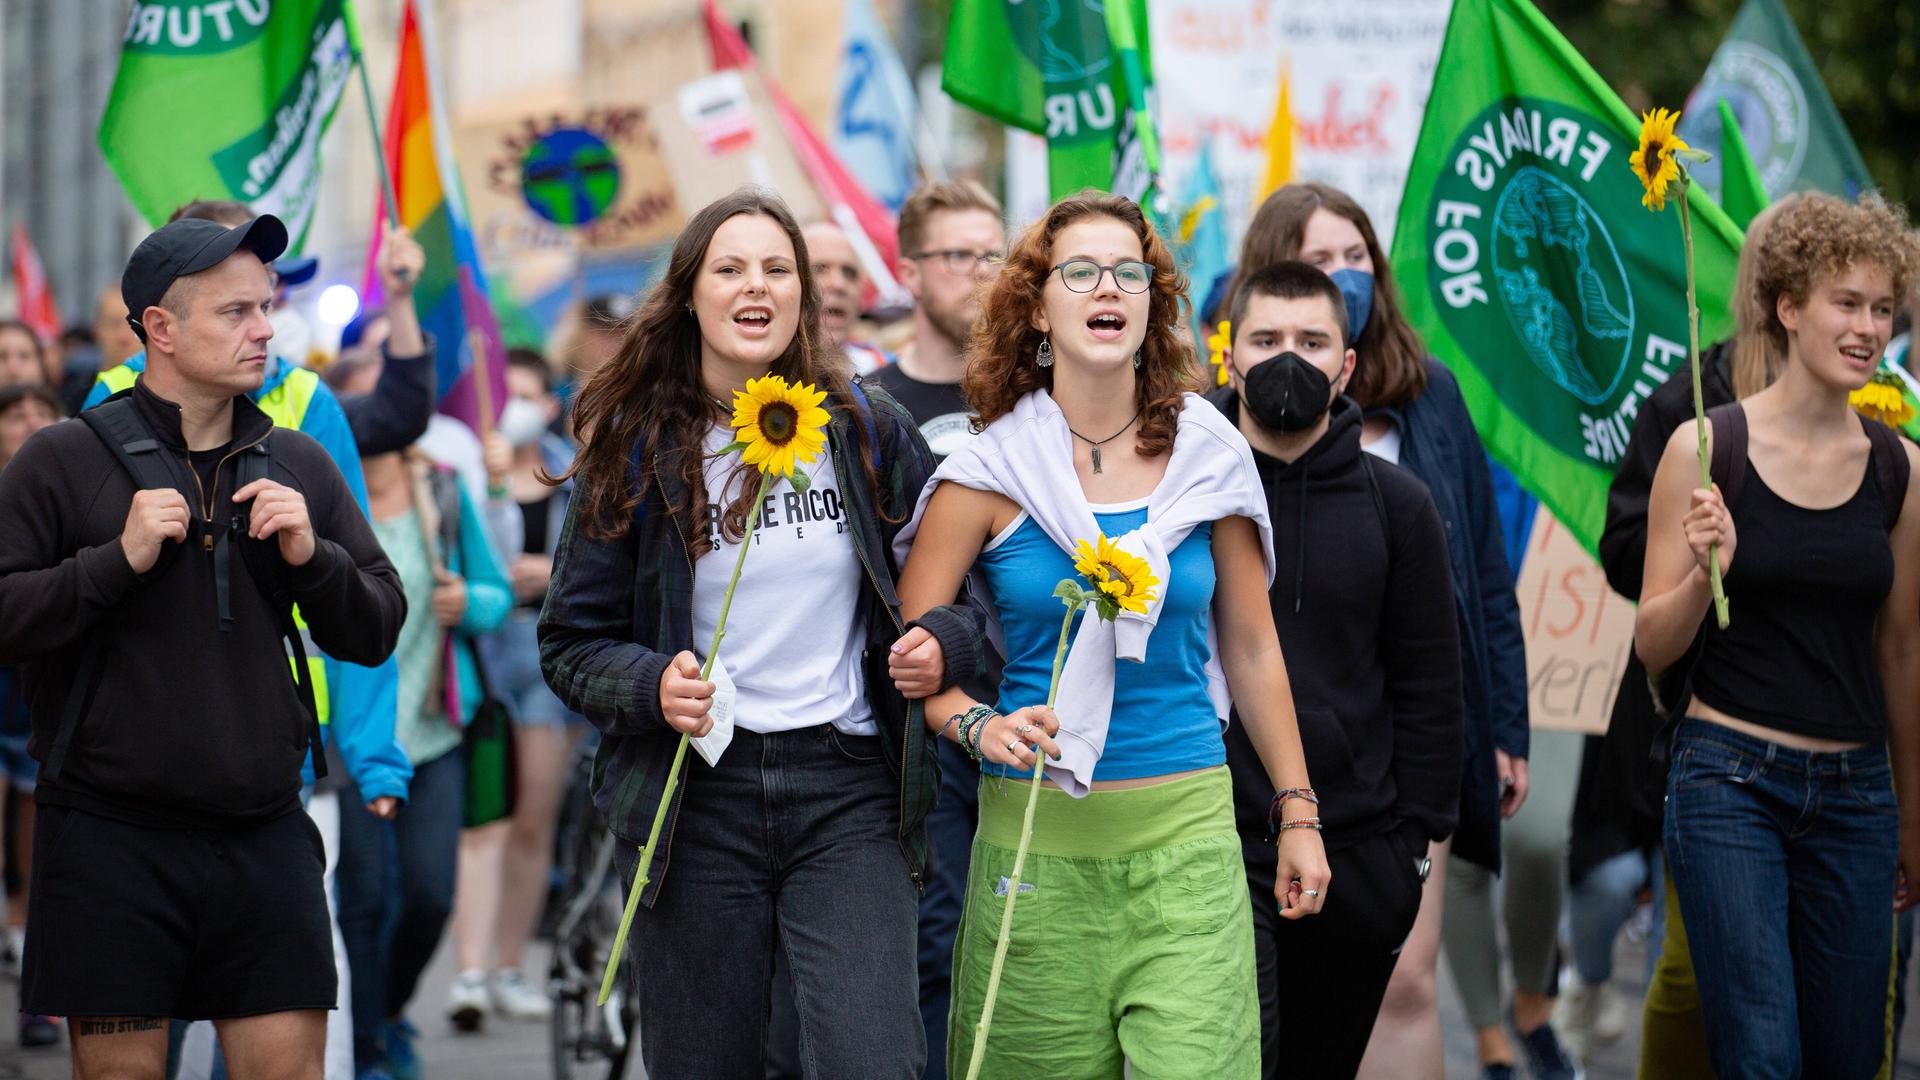 Zwei junge Frauen mit Sonnenblumen auf einer Demo. Im Hintergrund viele Fridays for Future-Fahnen.